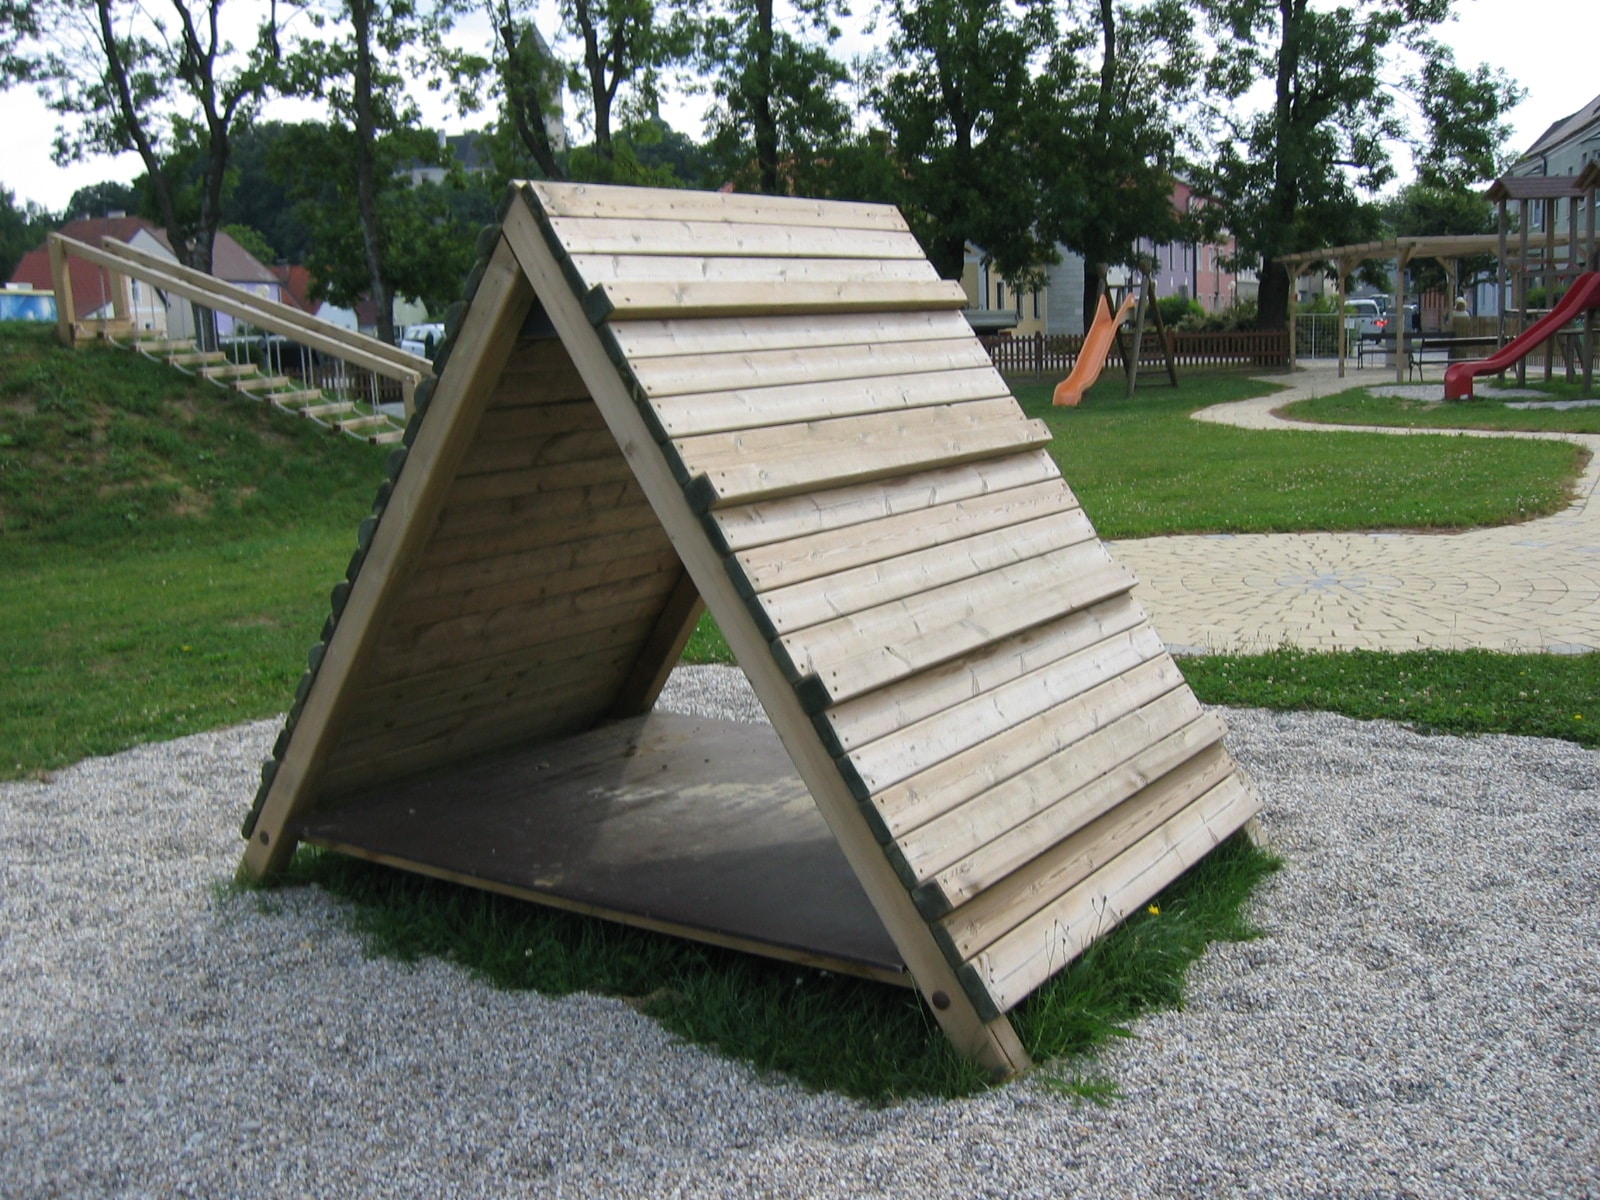 Kletterzelthaus von FREISPIEL aus Holz zum spielen für Kinder